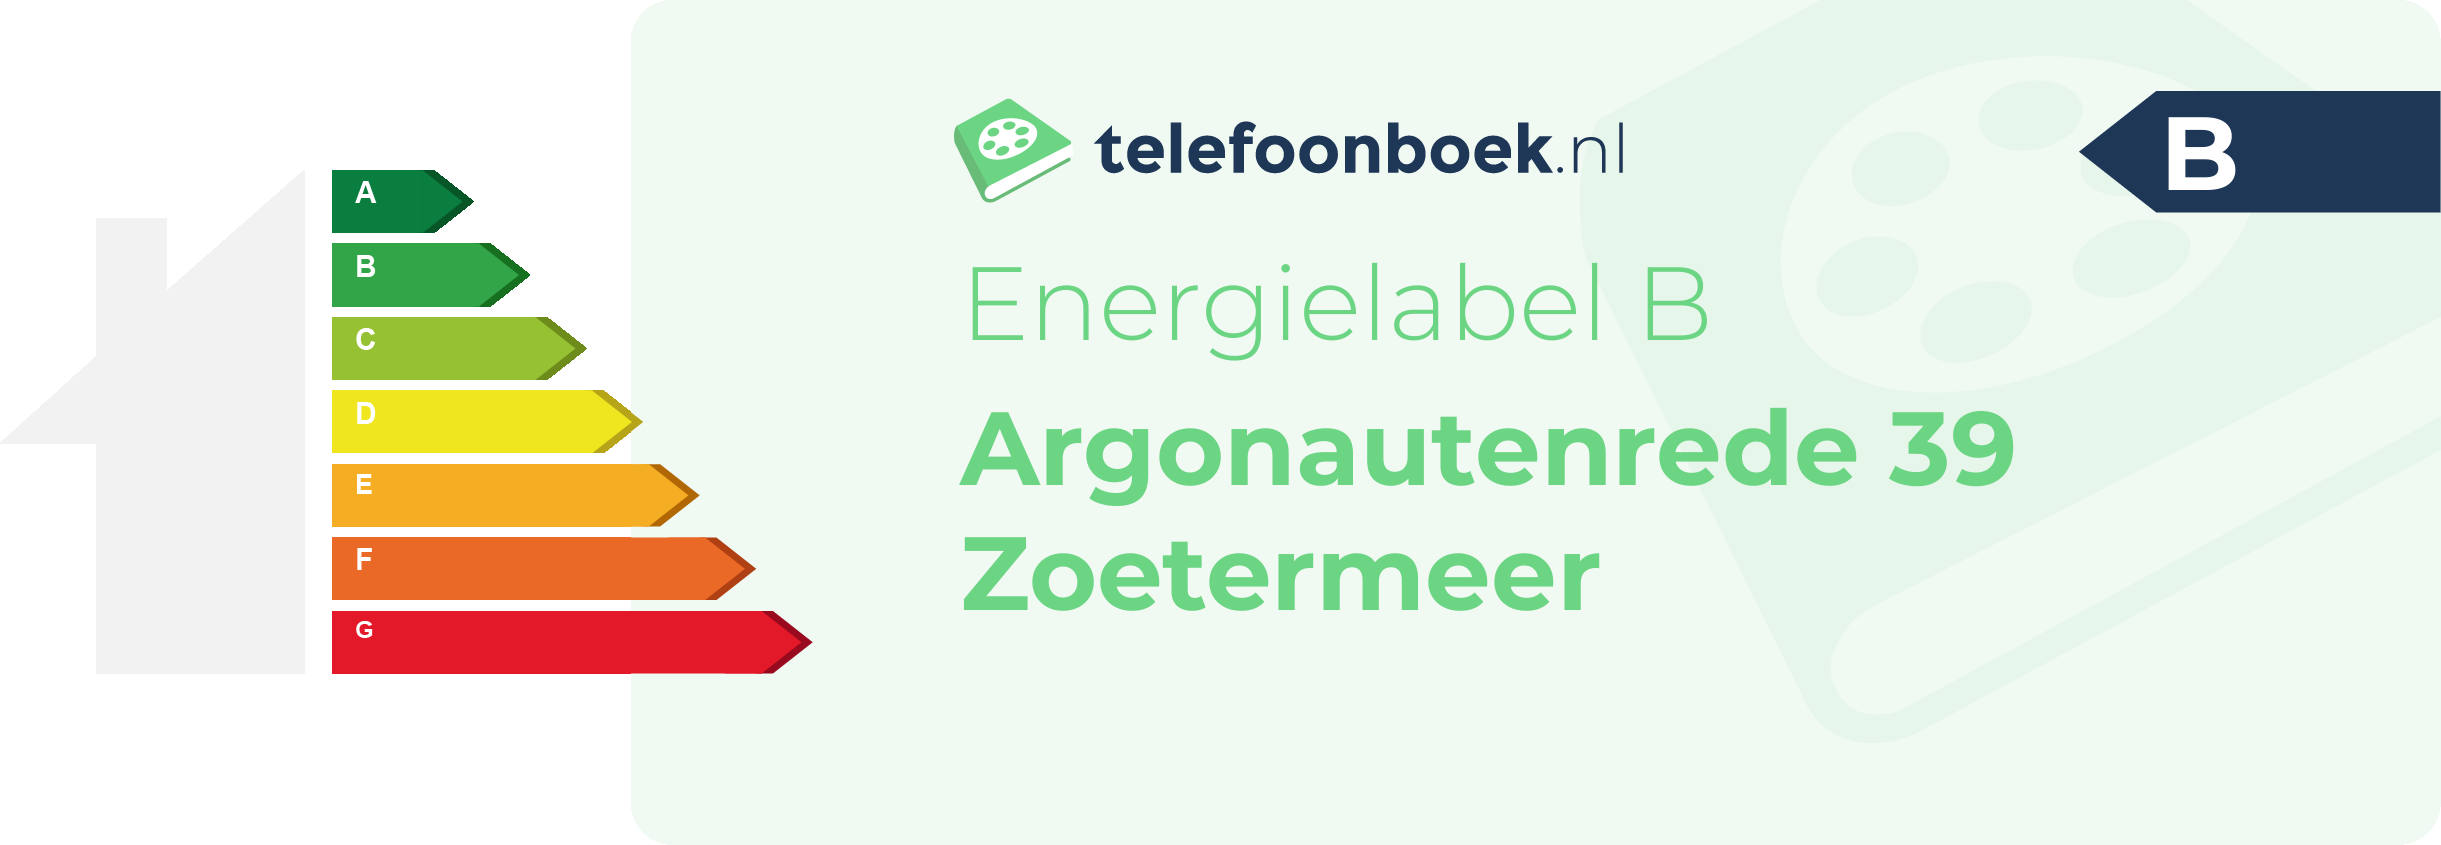 Energielabel Argonautenrede 39 Zoetermeer